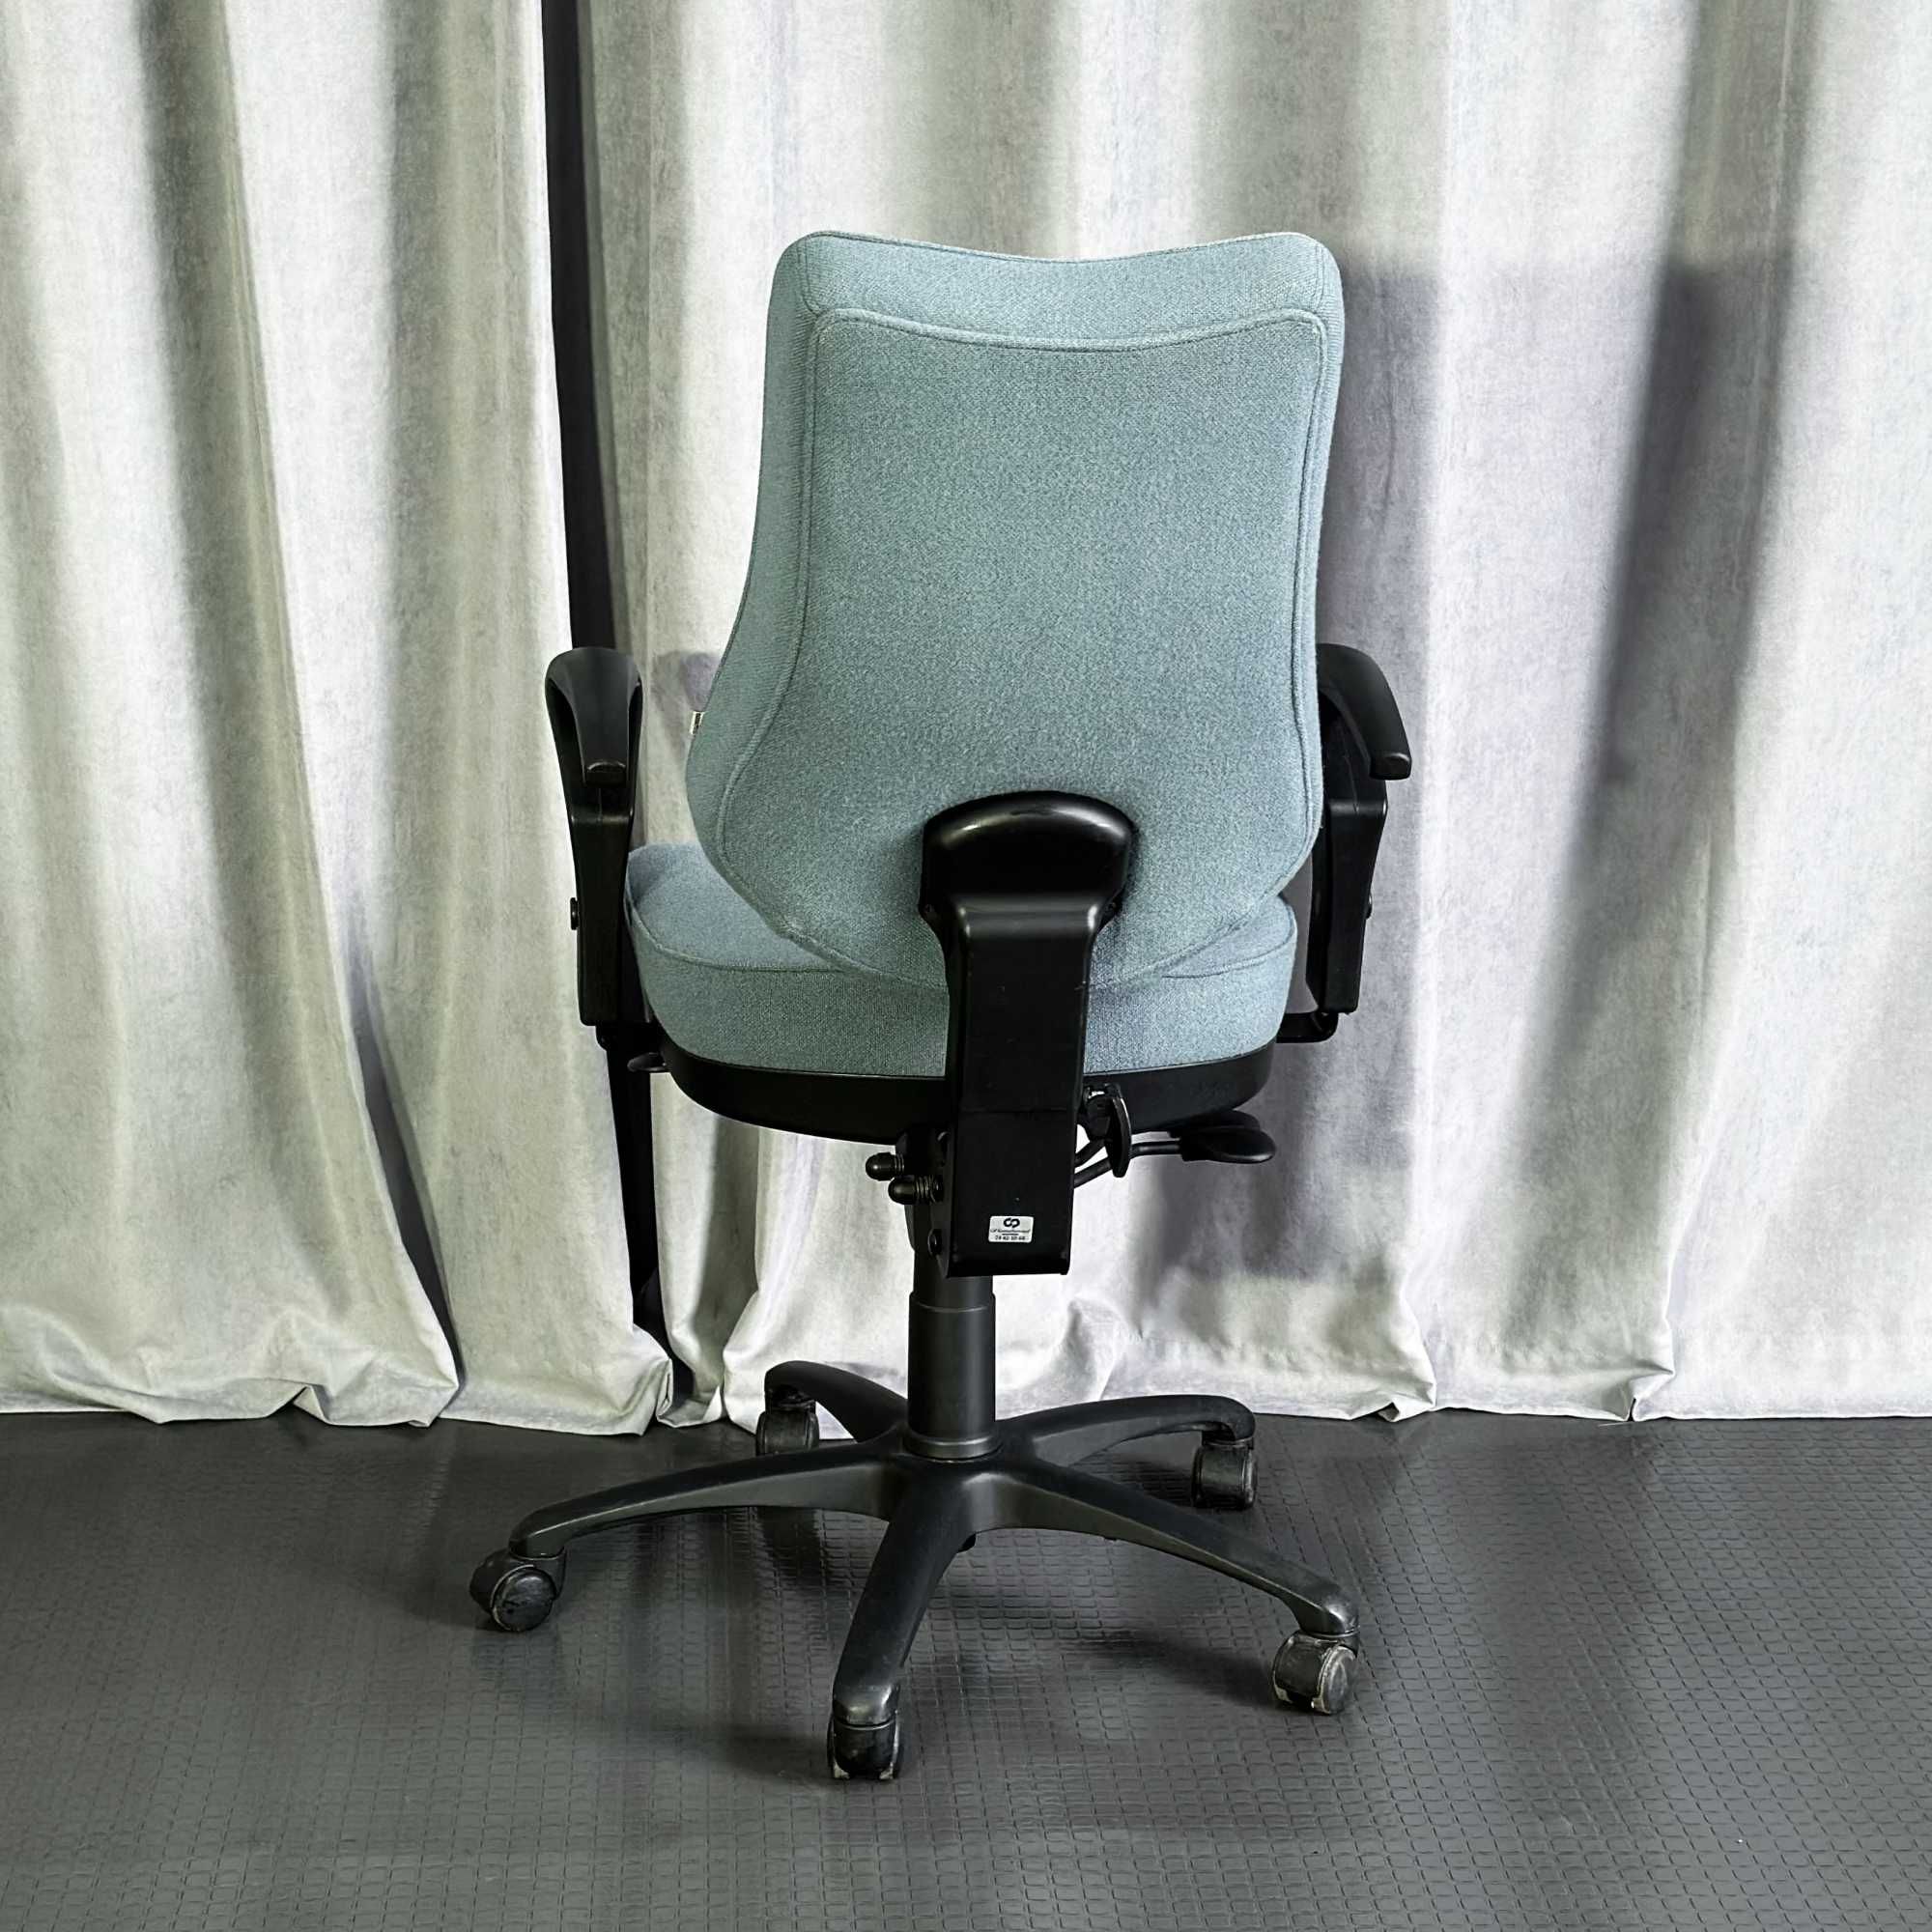 Робоче/комп'ютерне/офісне/бірюзове/оливкове крісло/офісні крісла/меблі